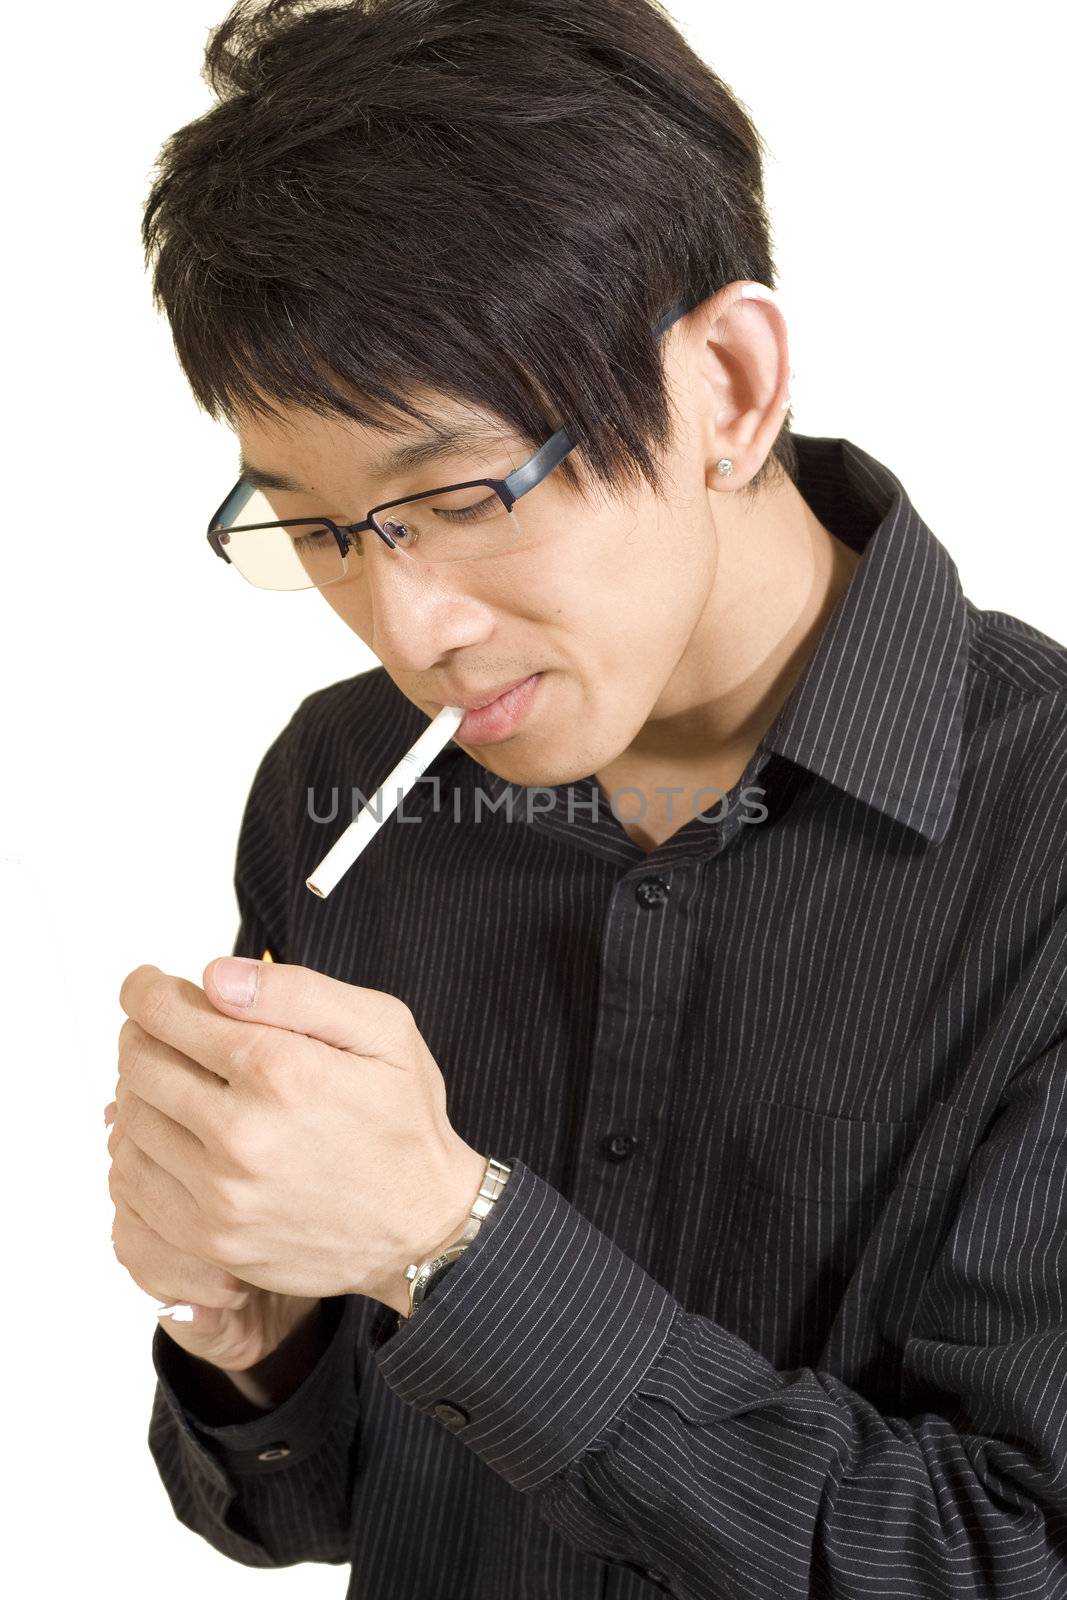 Young Asian man smoking